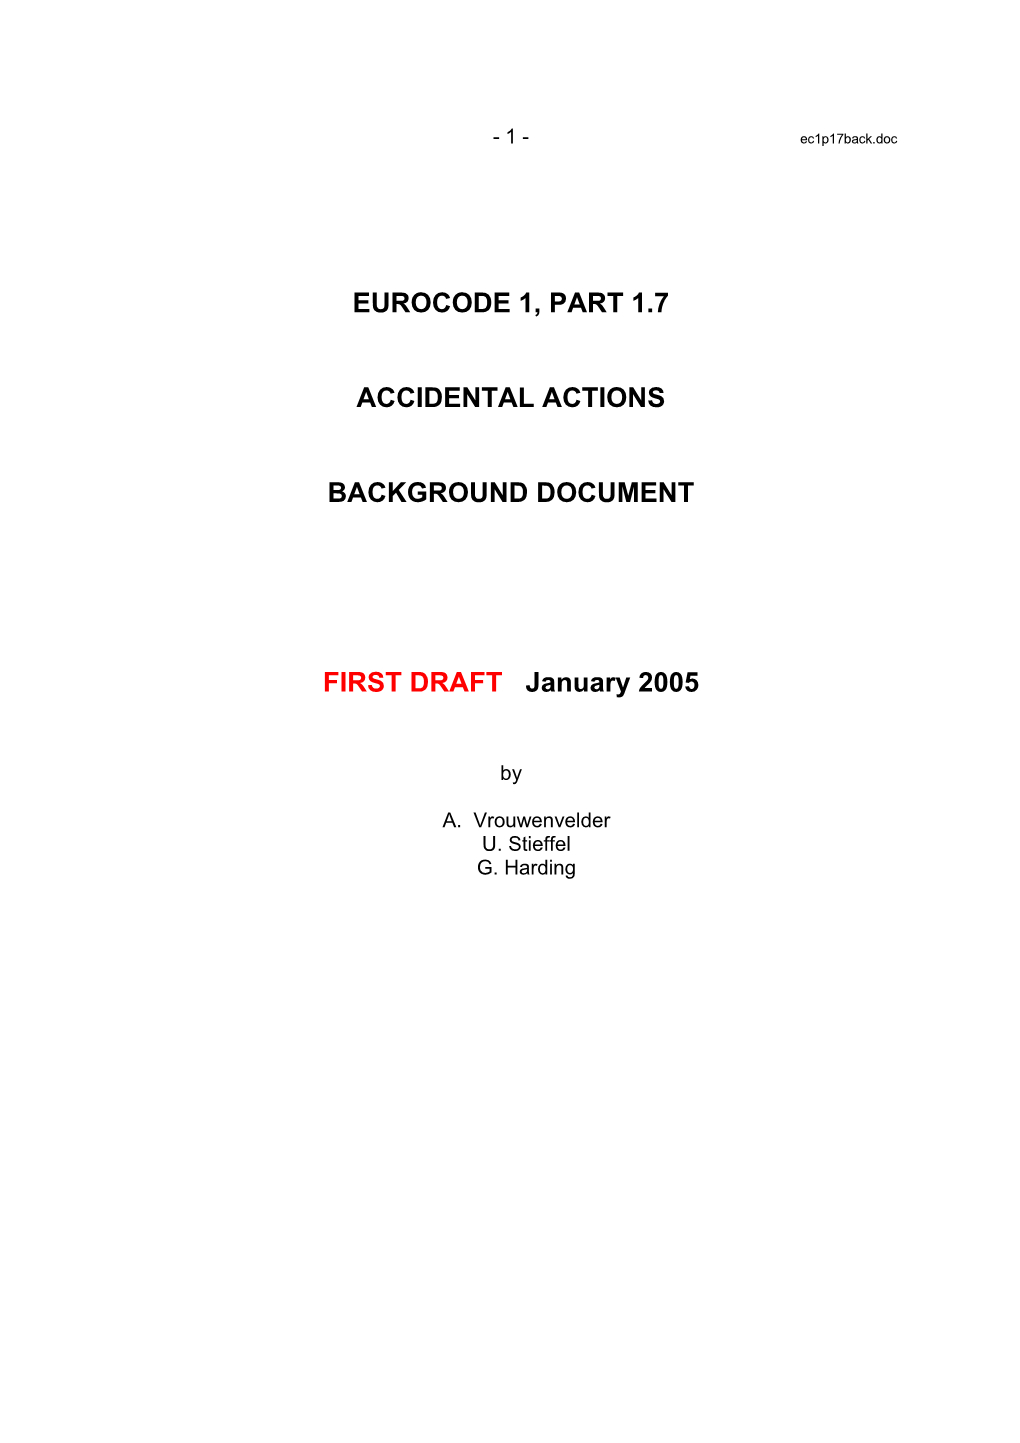 Eurocode 1, Part 1.7